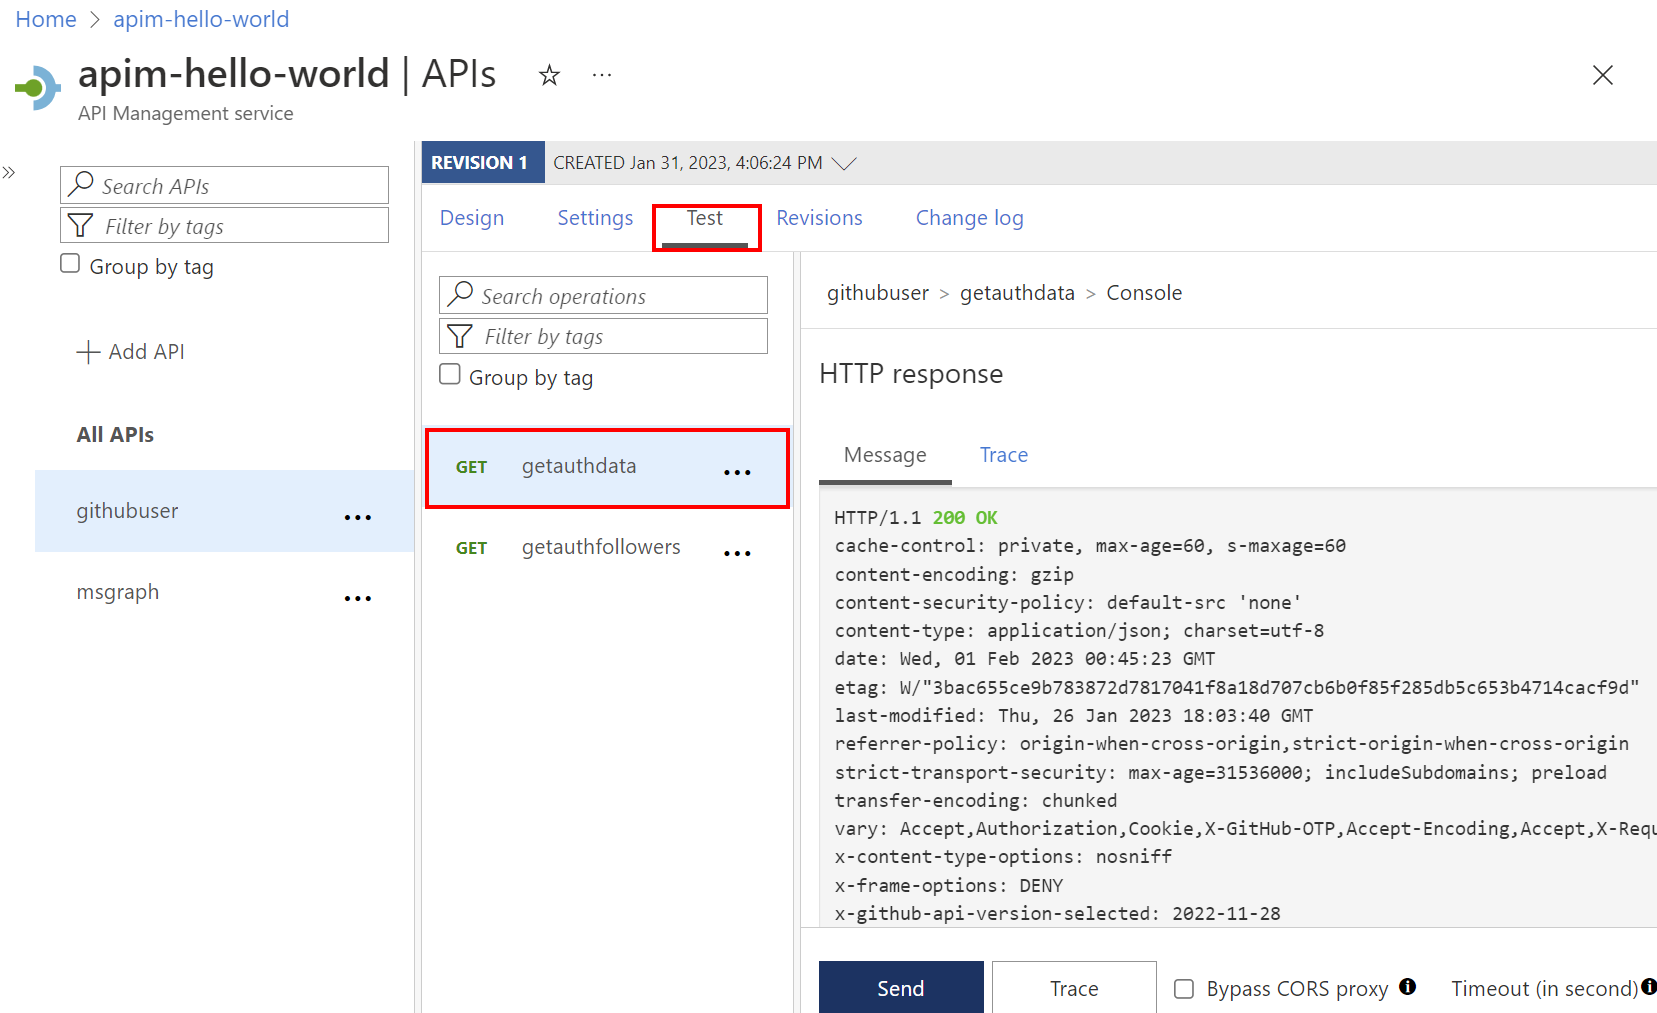 Captura de tela do teste bem-sucedido da API no portal.